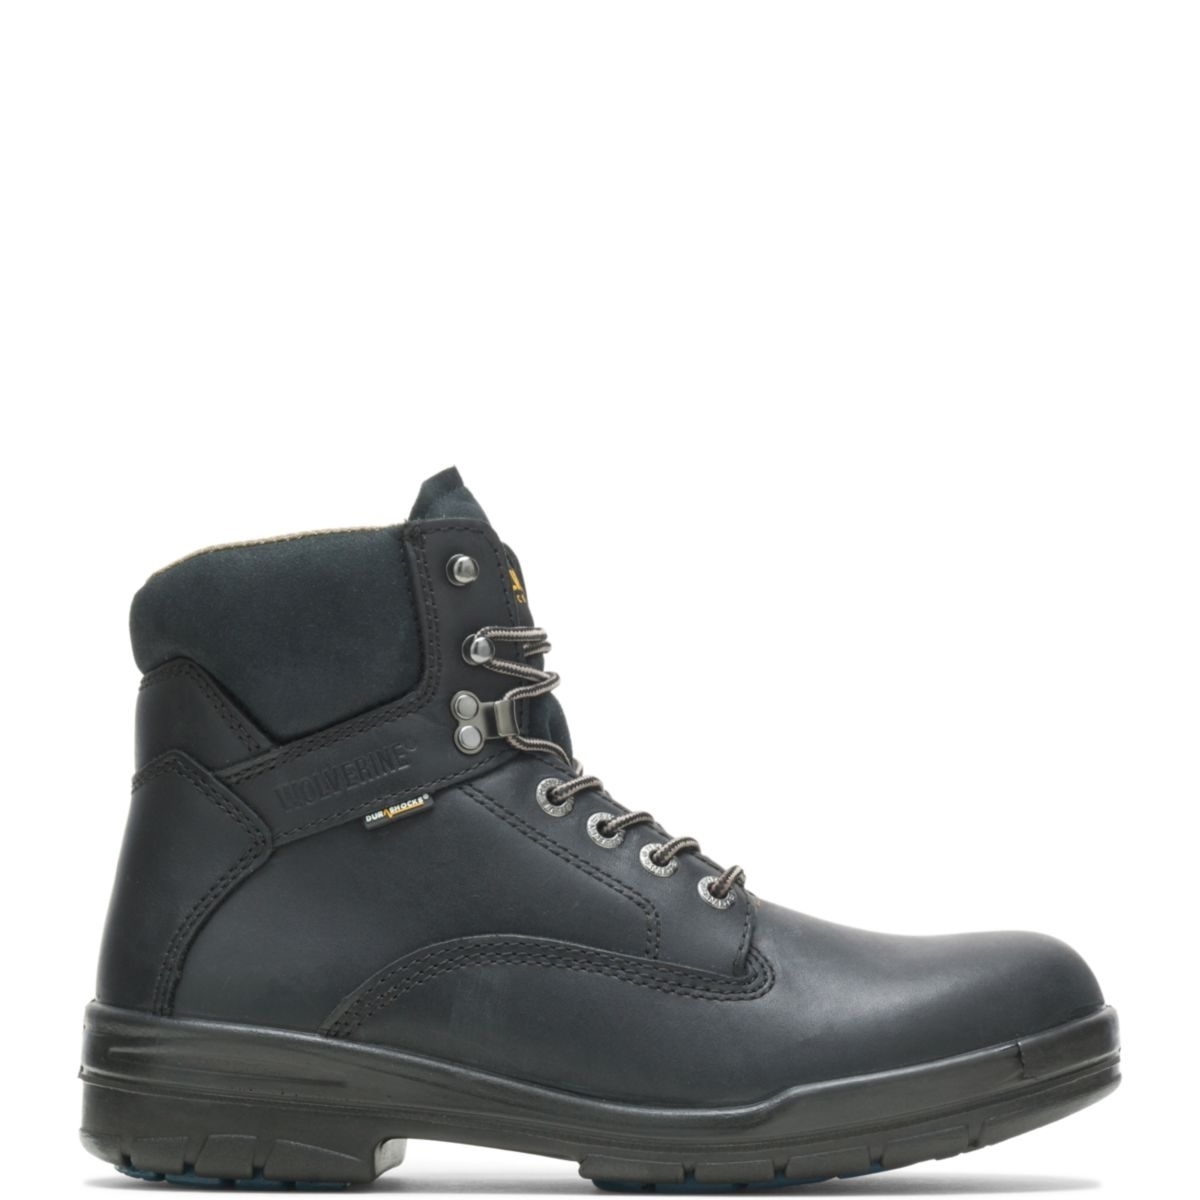 WOLVERINE Men's 6 DuraShocksÂ® Slip Resistant Direct-Attached Lined Soft Toe Work Boot Black - W03123 14 WIDE BLACK - BLACK, 13